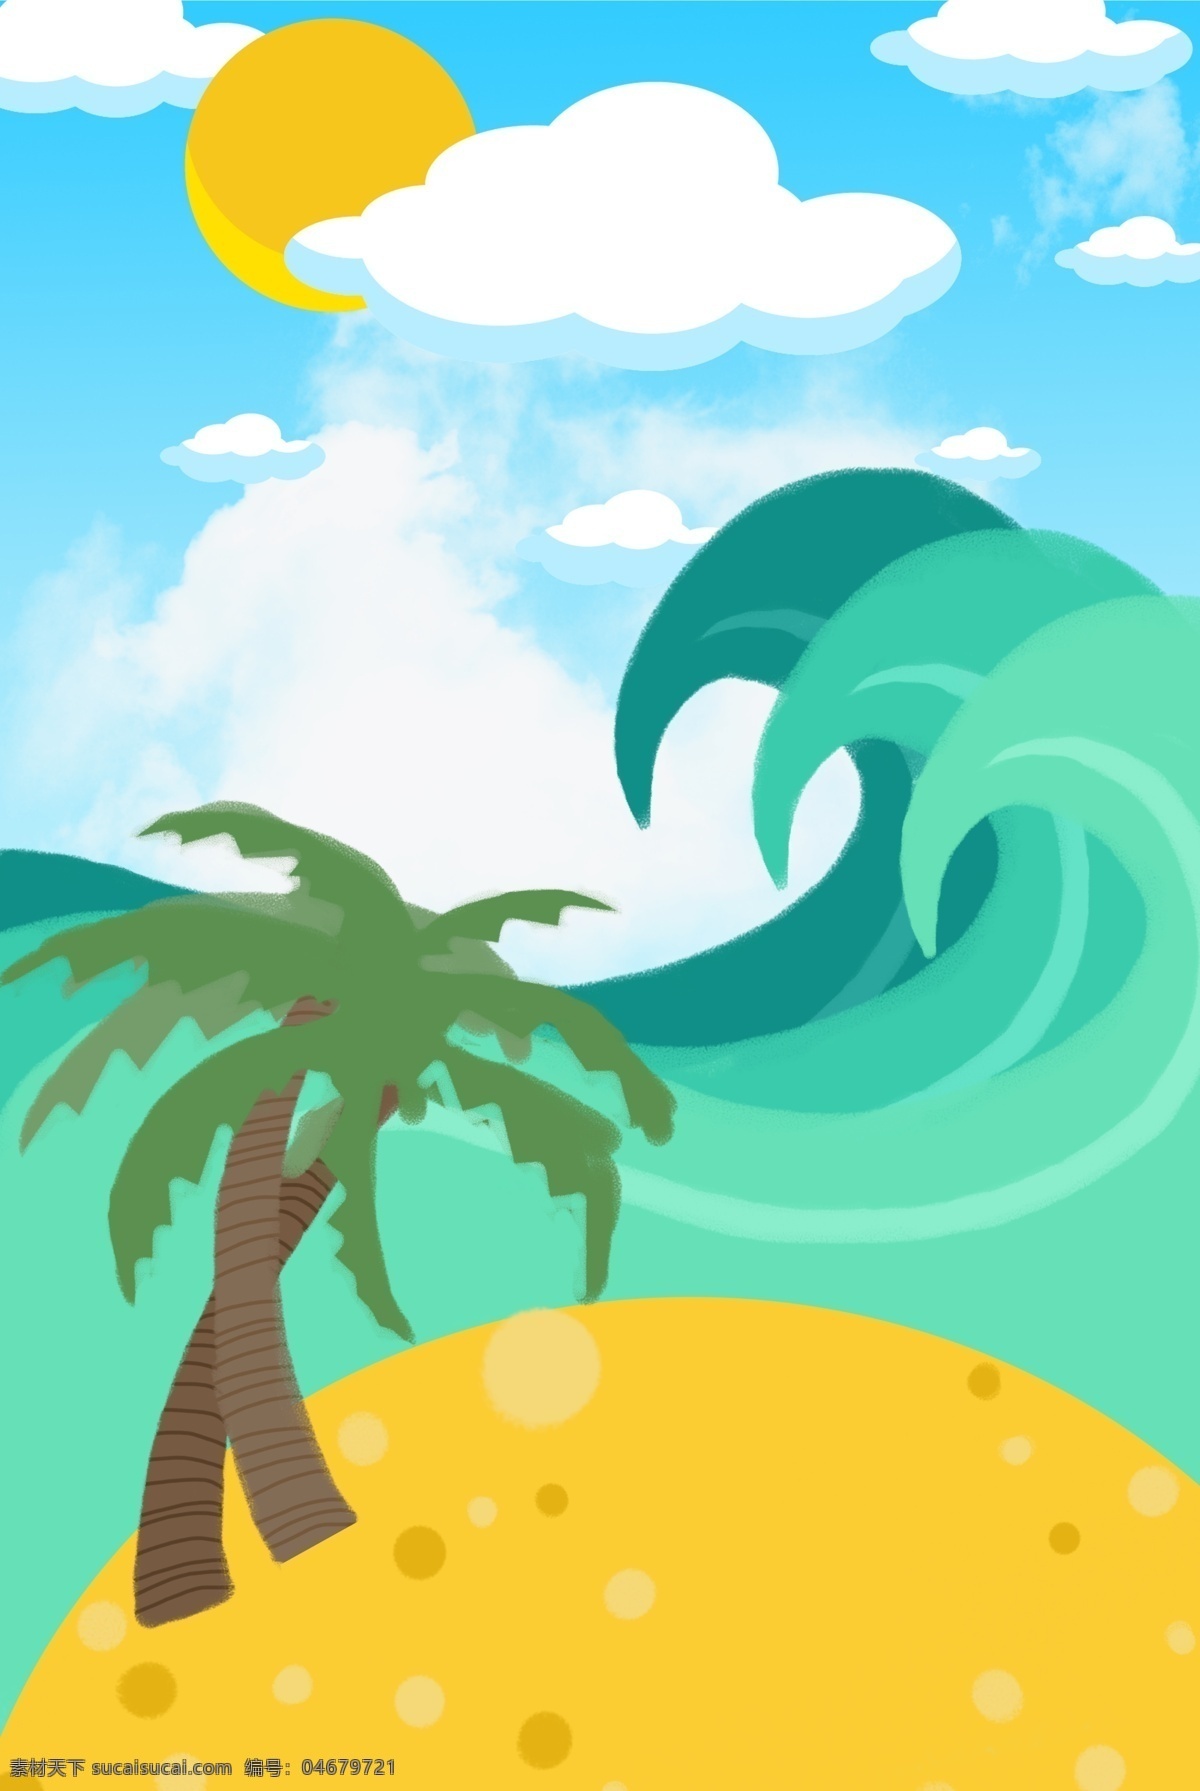 唯美海浪背景 海浪 凉爽的 椰子树 美丽的 遮阳篷 假日 卡通 夏天 太阳 夏天海边 沙滩 度假